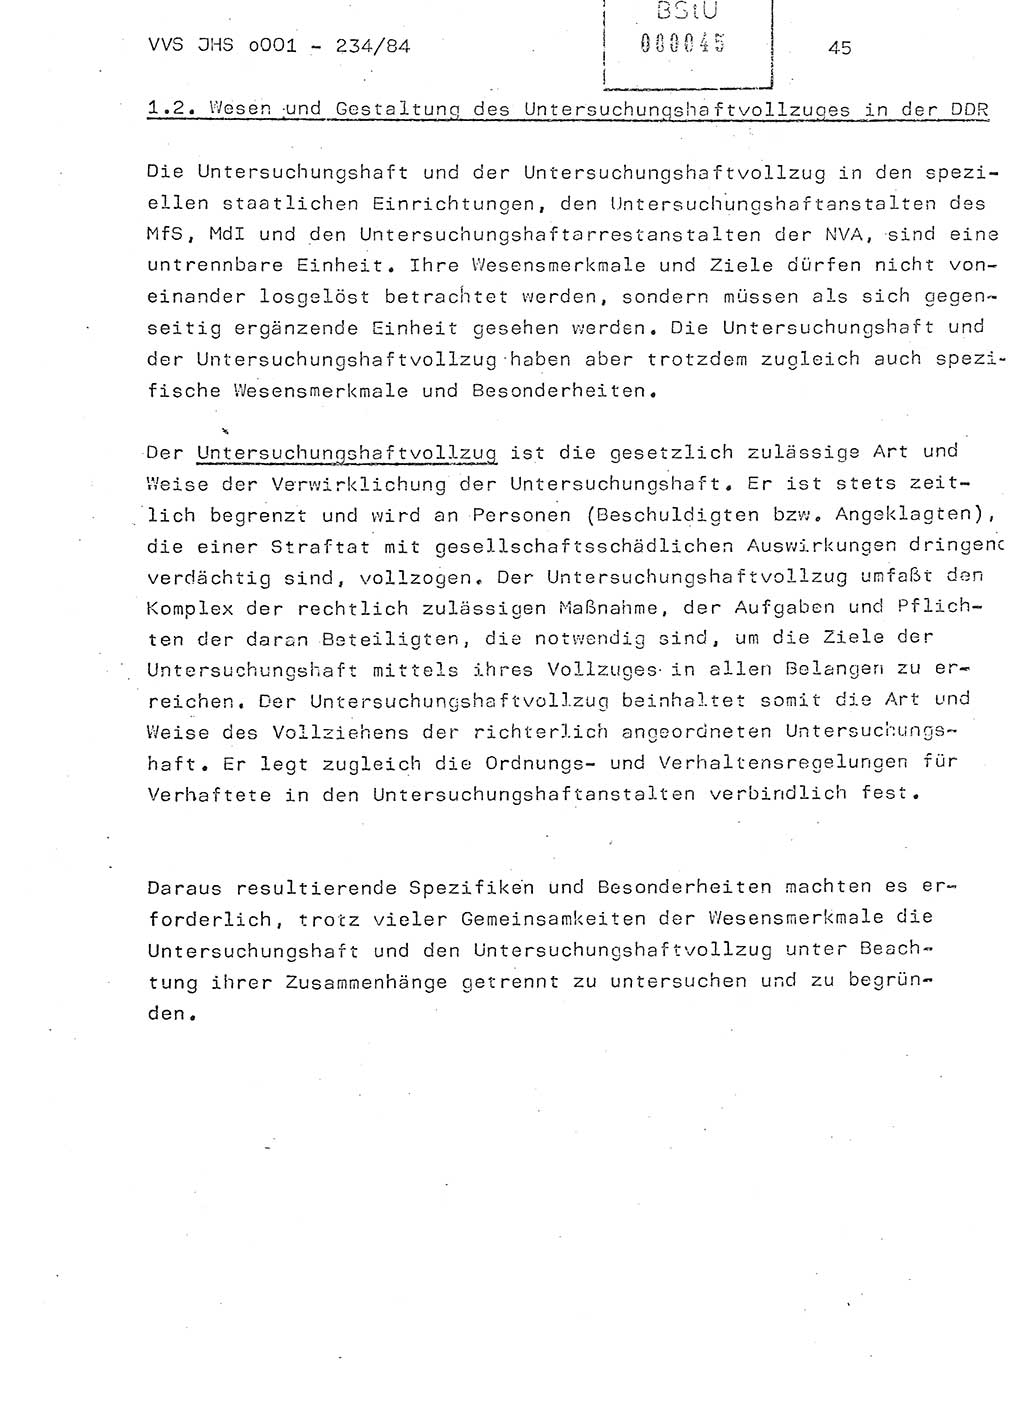 Dissertation Oberst Siegfried Rataizick (Abt. ⅩⅣ), Oberstleutnant Volkmar Heinz (Abt. ⅩⅣ), Oberstleutnant Werner Stein (HA Ⅸ), Hauptmann Heinz Conrad (JHS), Ministerium für Staatssicherheit (MfS) [Deutsche Demokratische Republik (DDR)], Juristische Hochschule (JHS), Vertrauliche Verschlußsache (VVS) o001-234/84, Potsdam 1984, Seite 45 (Diss. MfS DDR JHS VVS o001-234/84 1984, S. 45)